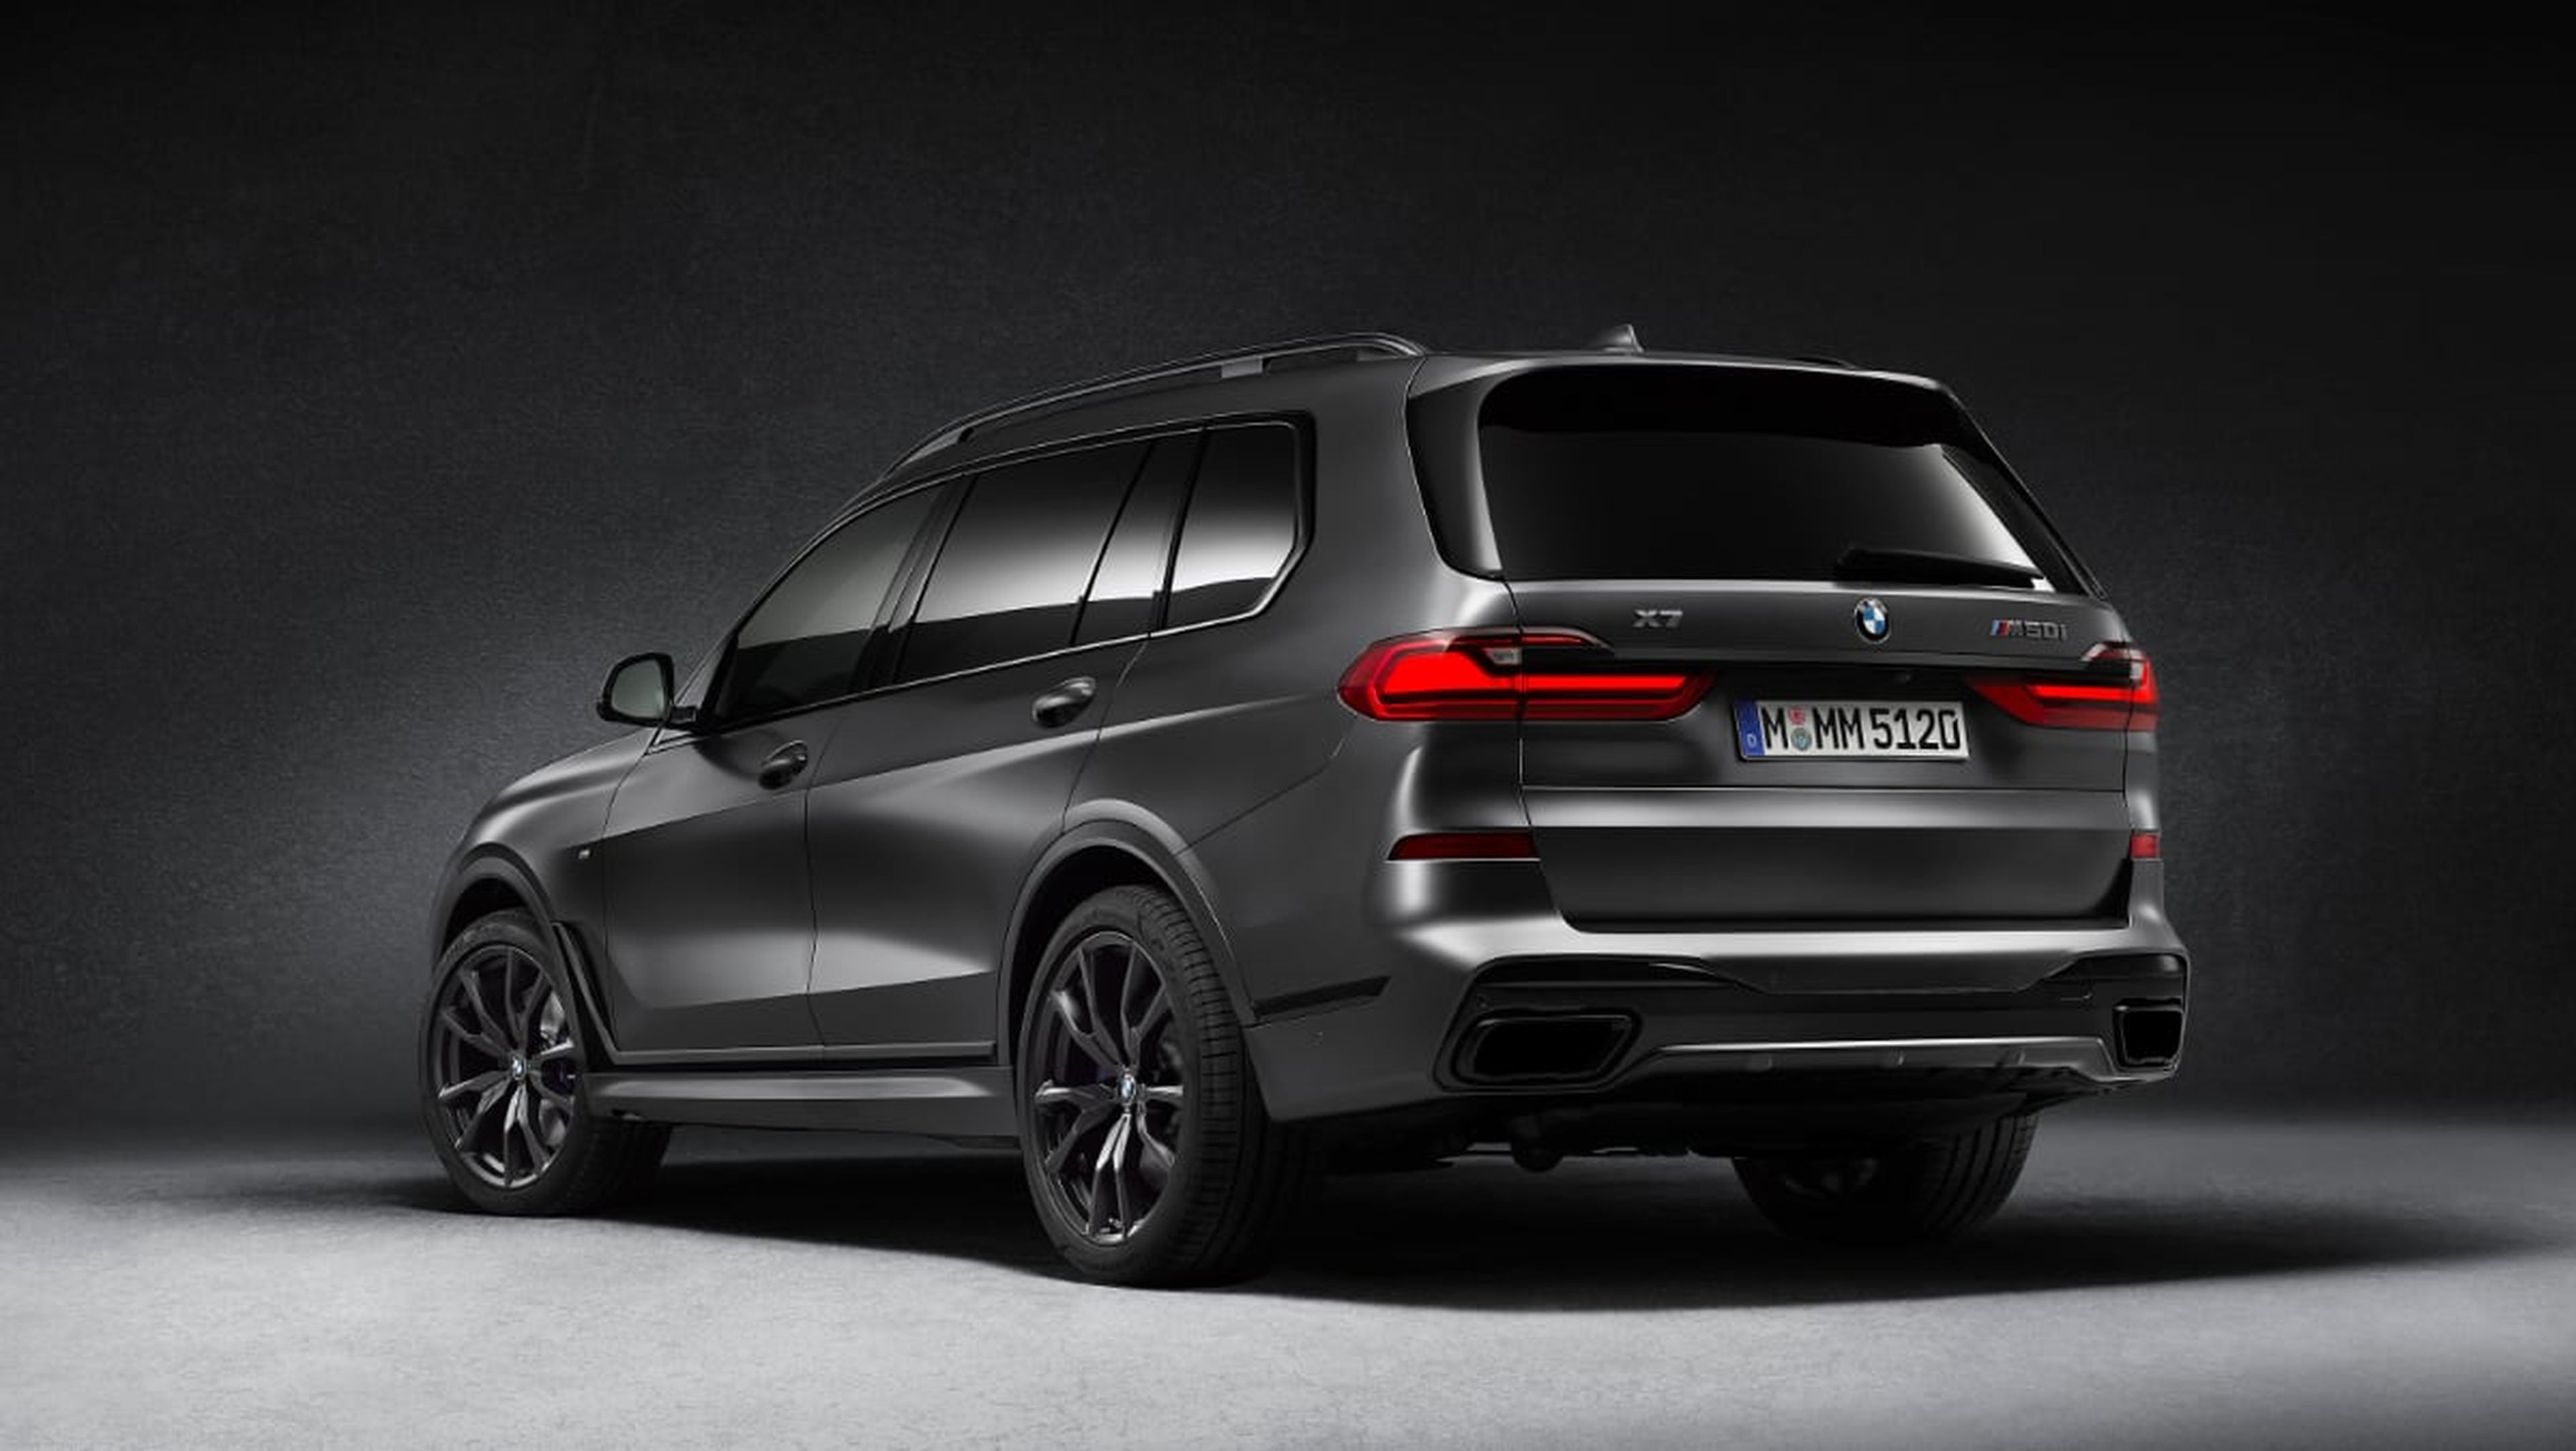 Galería: nuevo BMW X7 Dark Edition - exterior